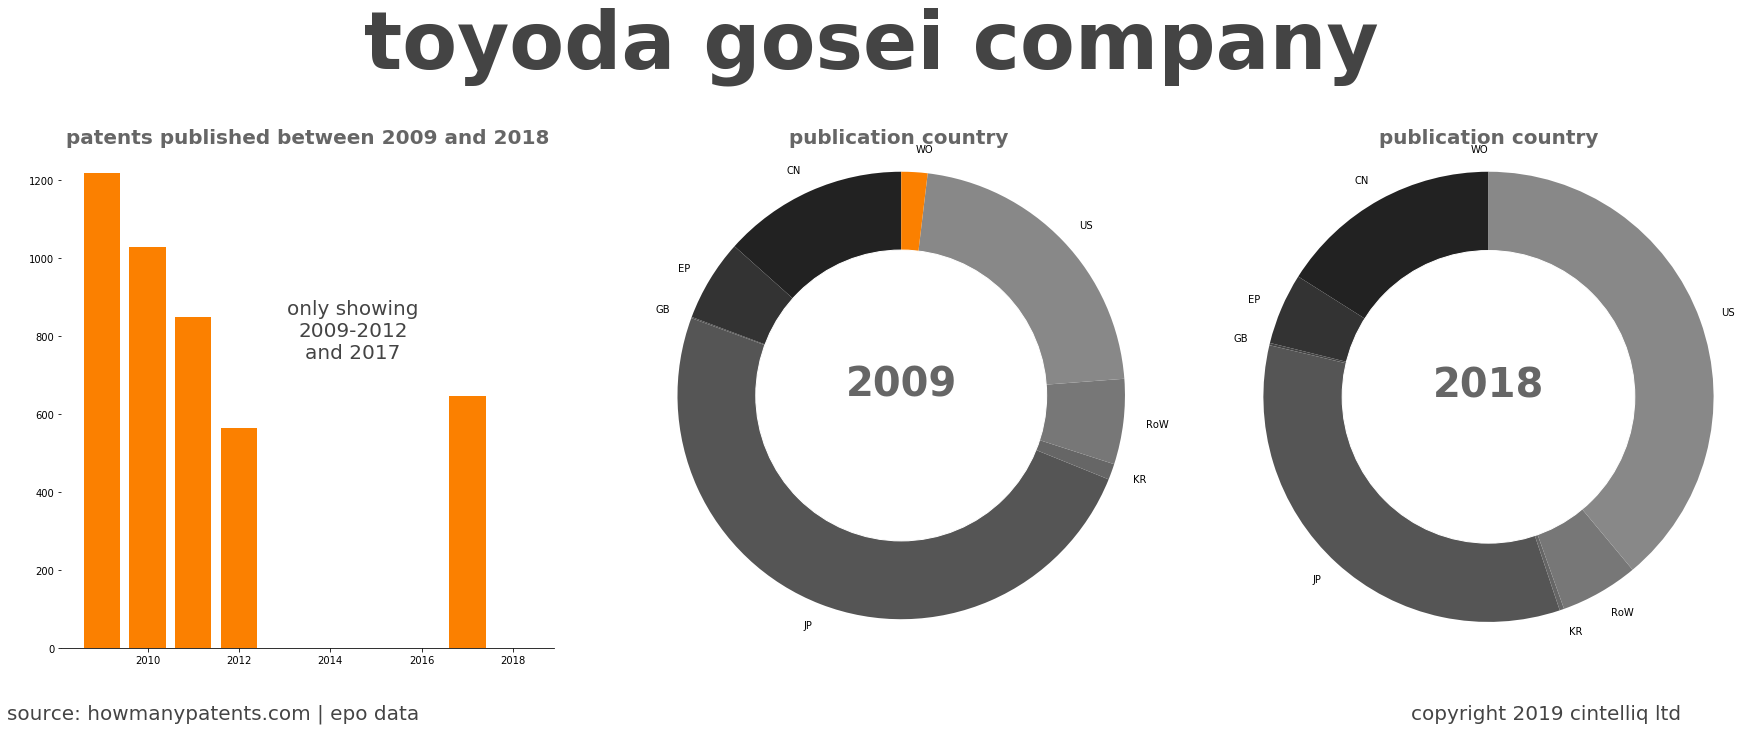 summary of patents for Toyoda Gosei Company